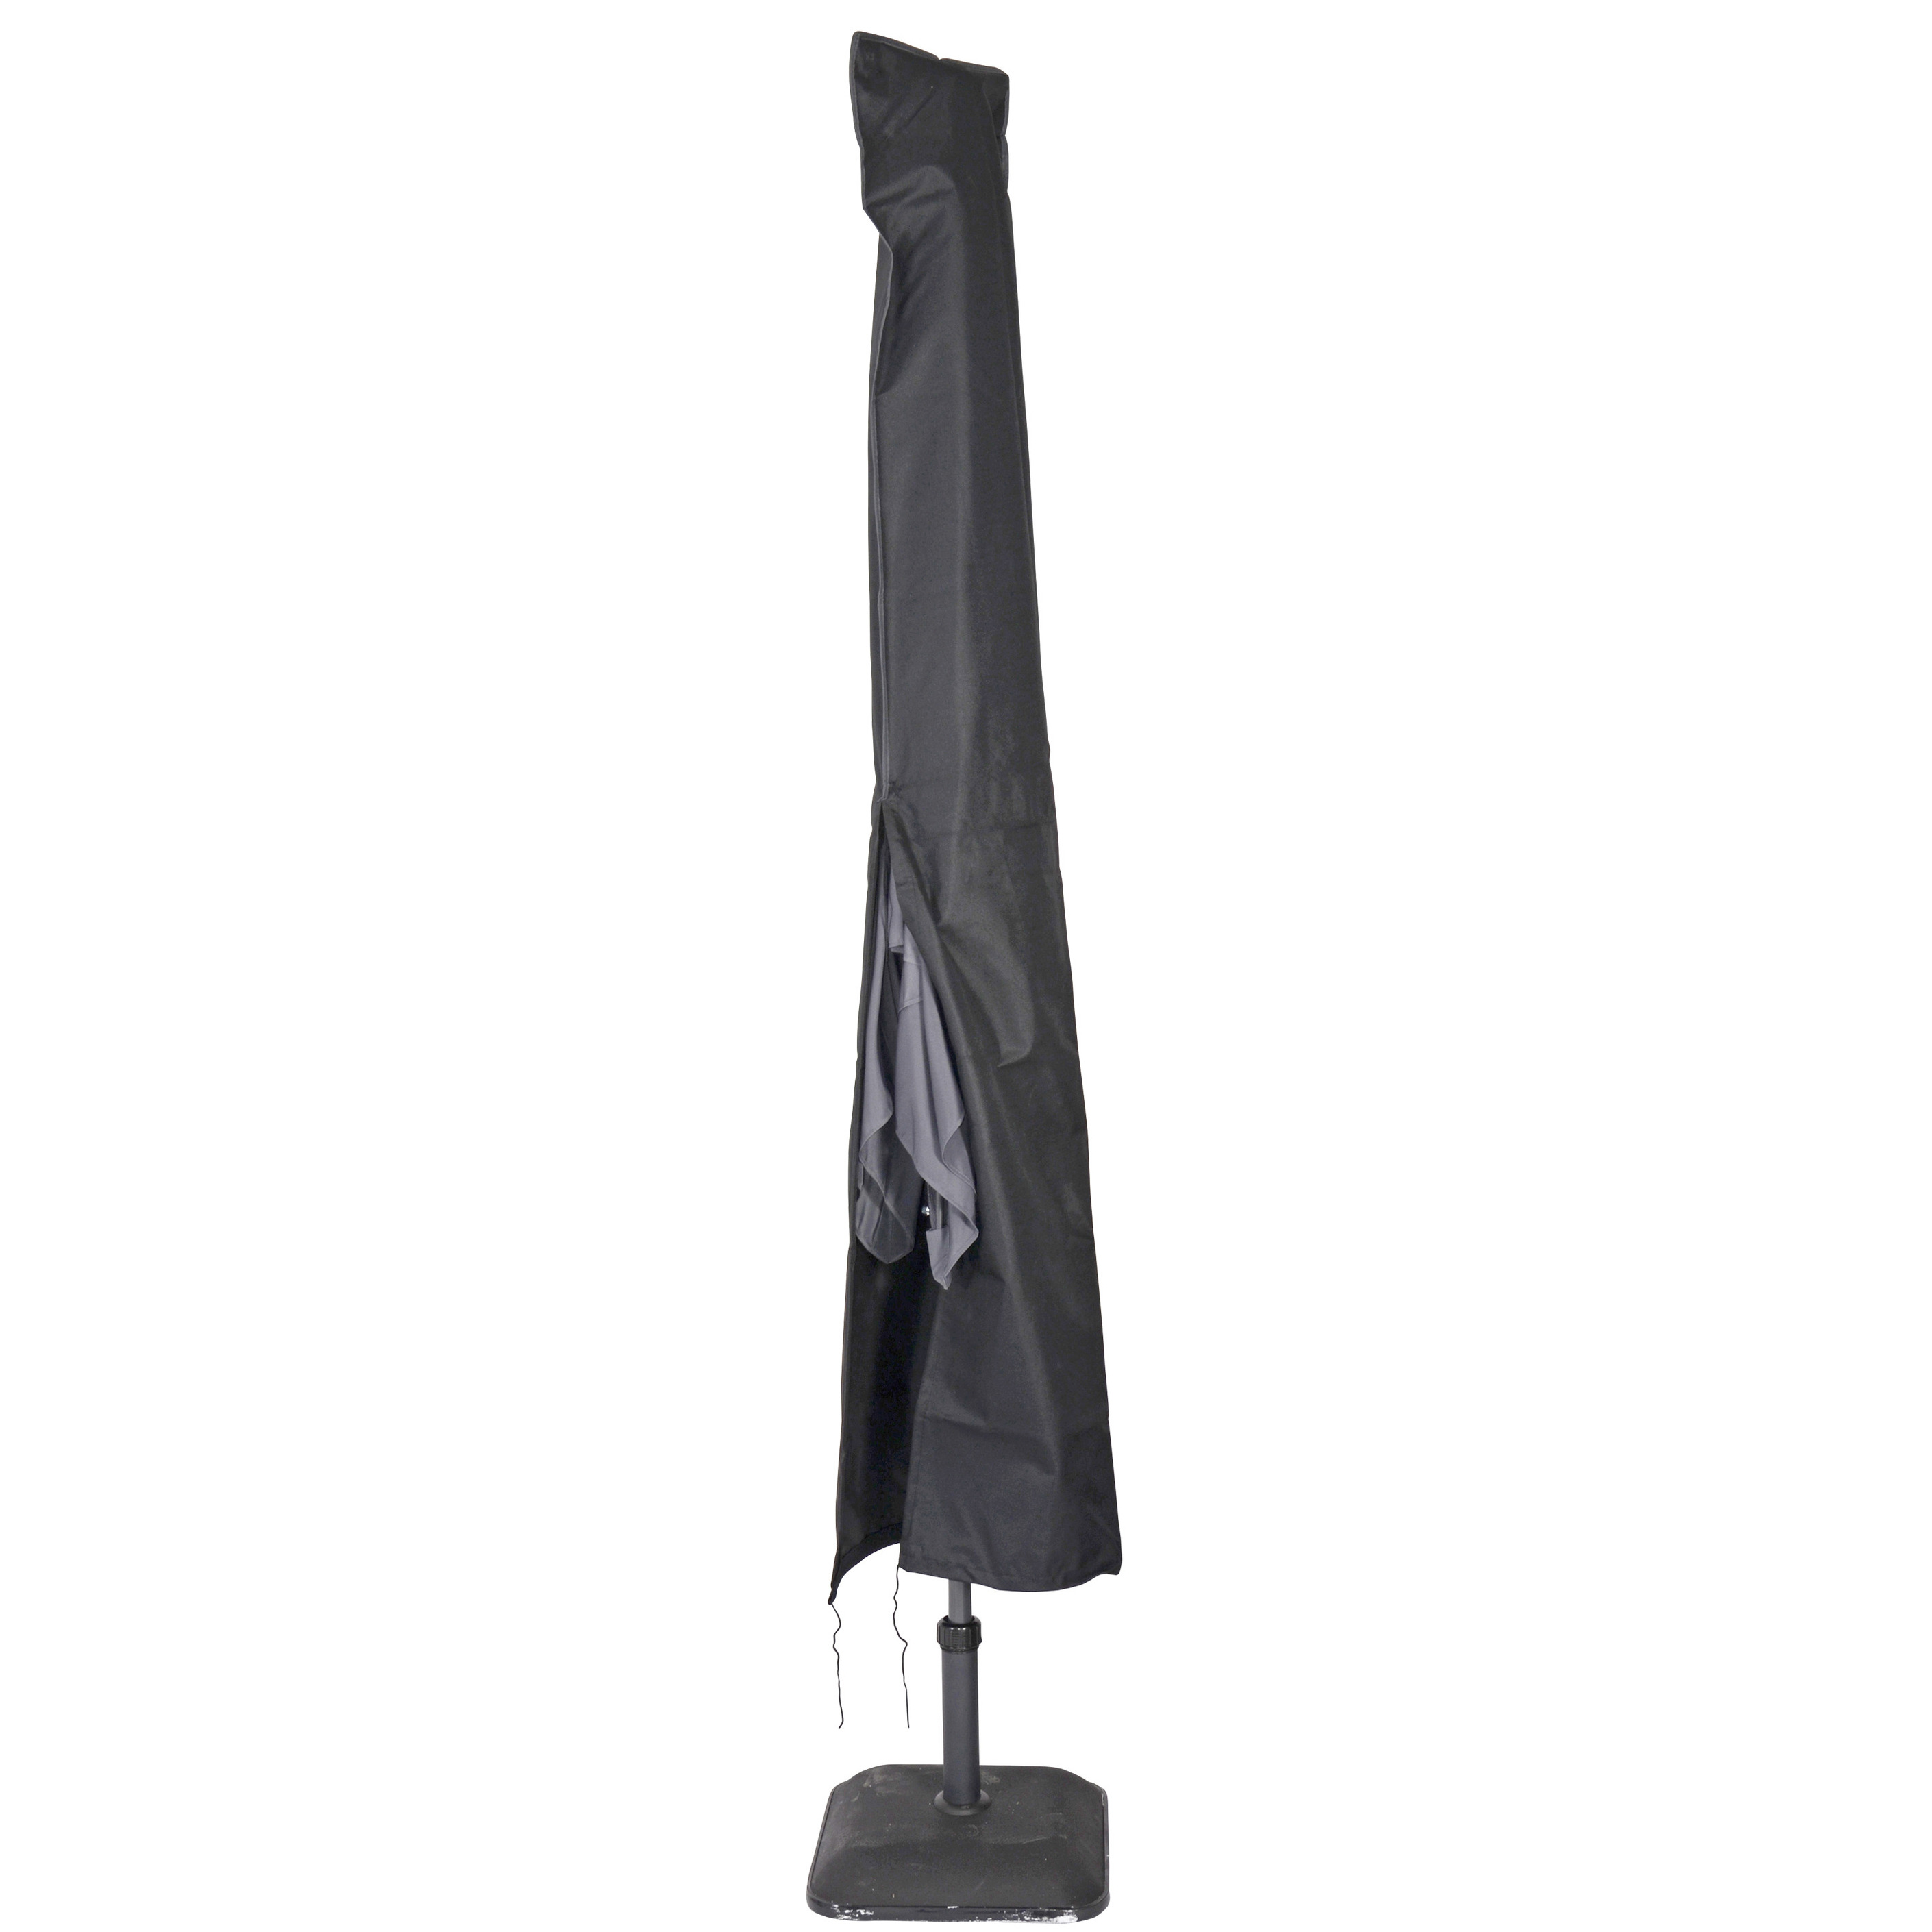 Afdekhoes-beschermhoes zwart voor parasols met een diameter van 4 m inclusief stok